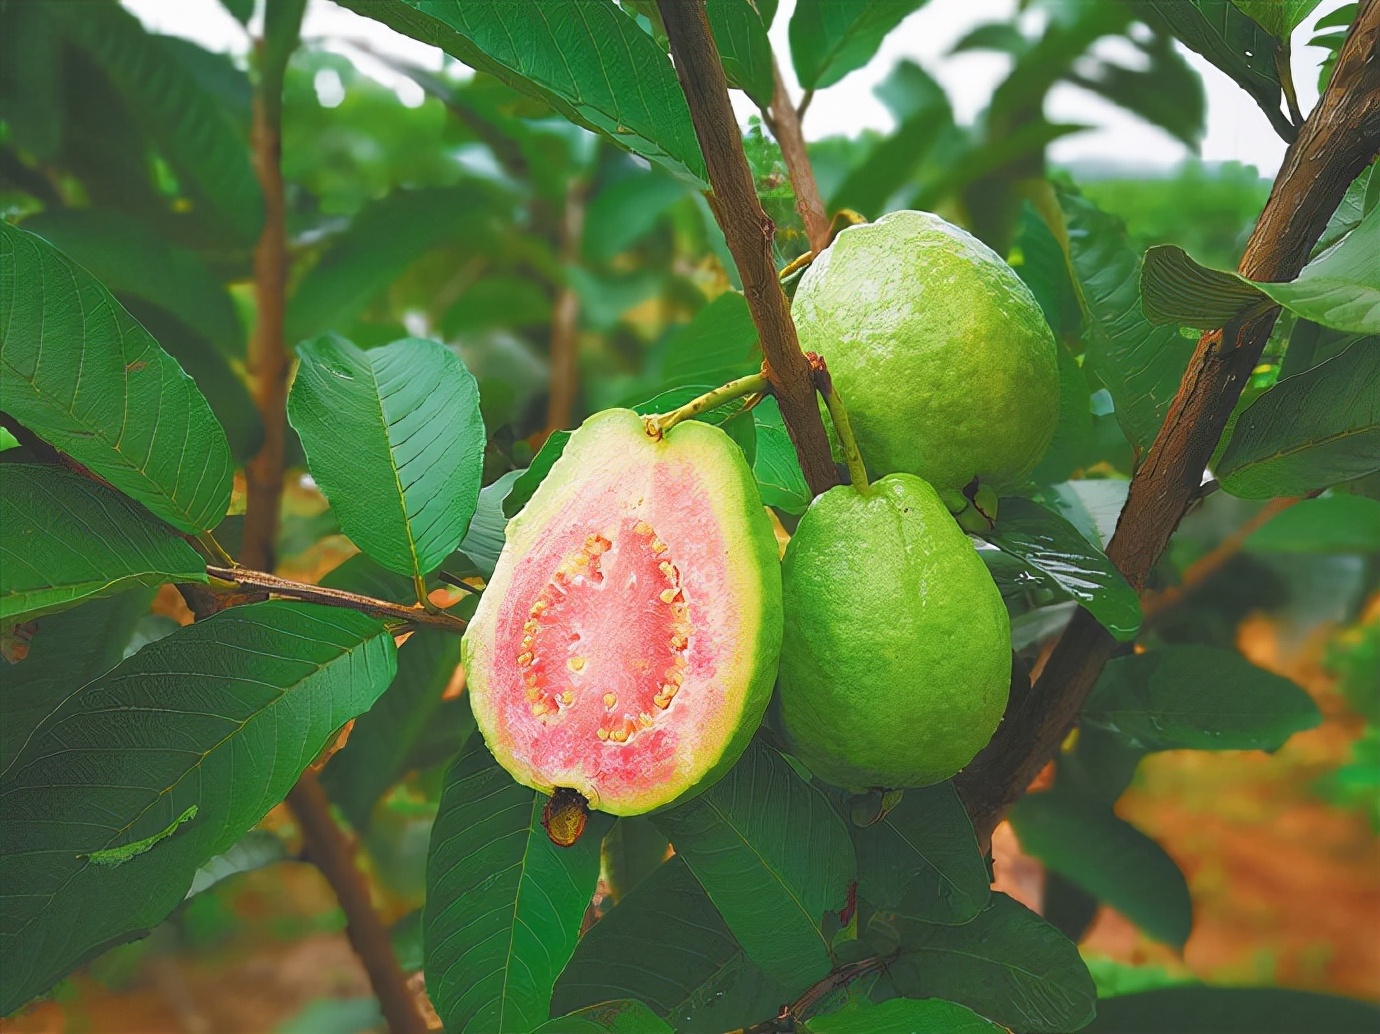 缅甸进口西瓜和香瓜已成为主要出口中国的水果